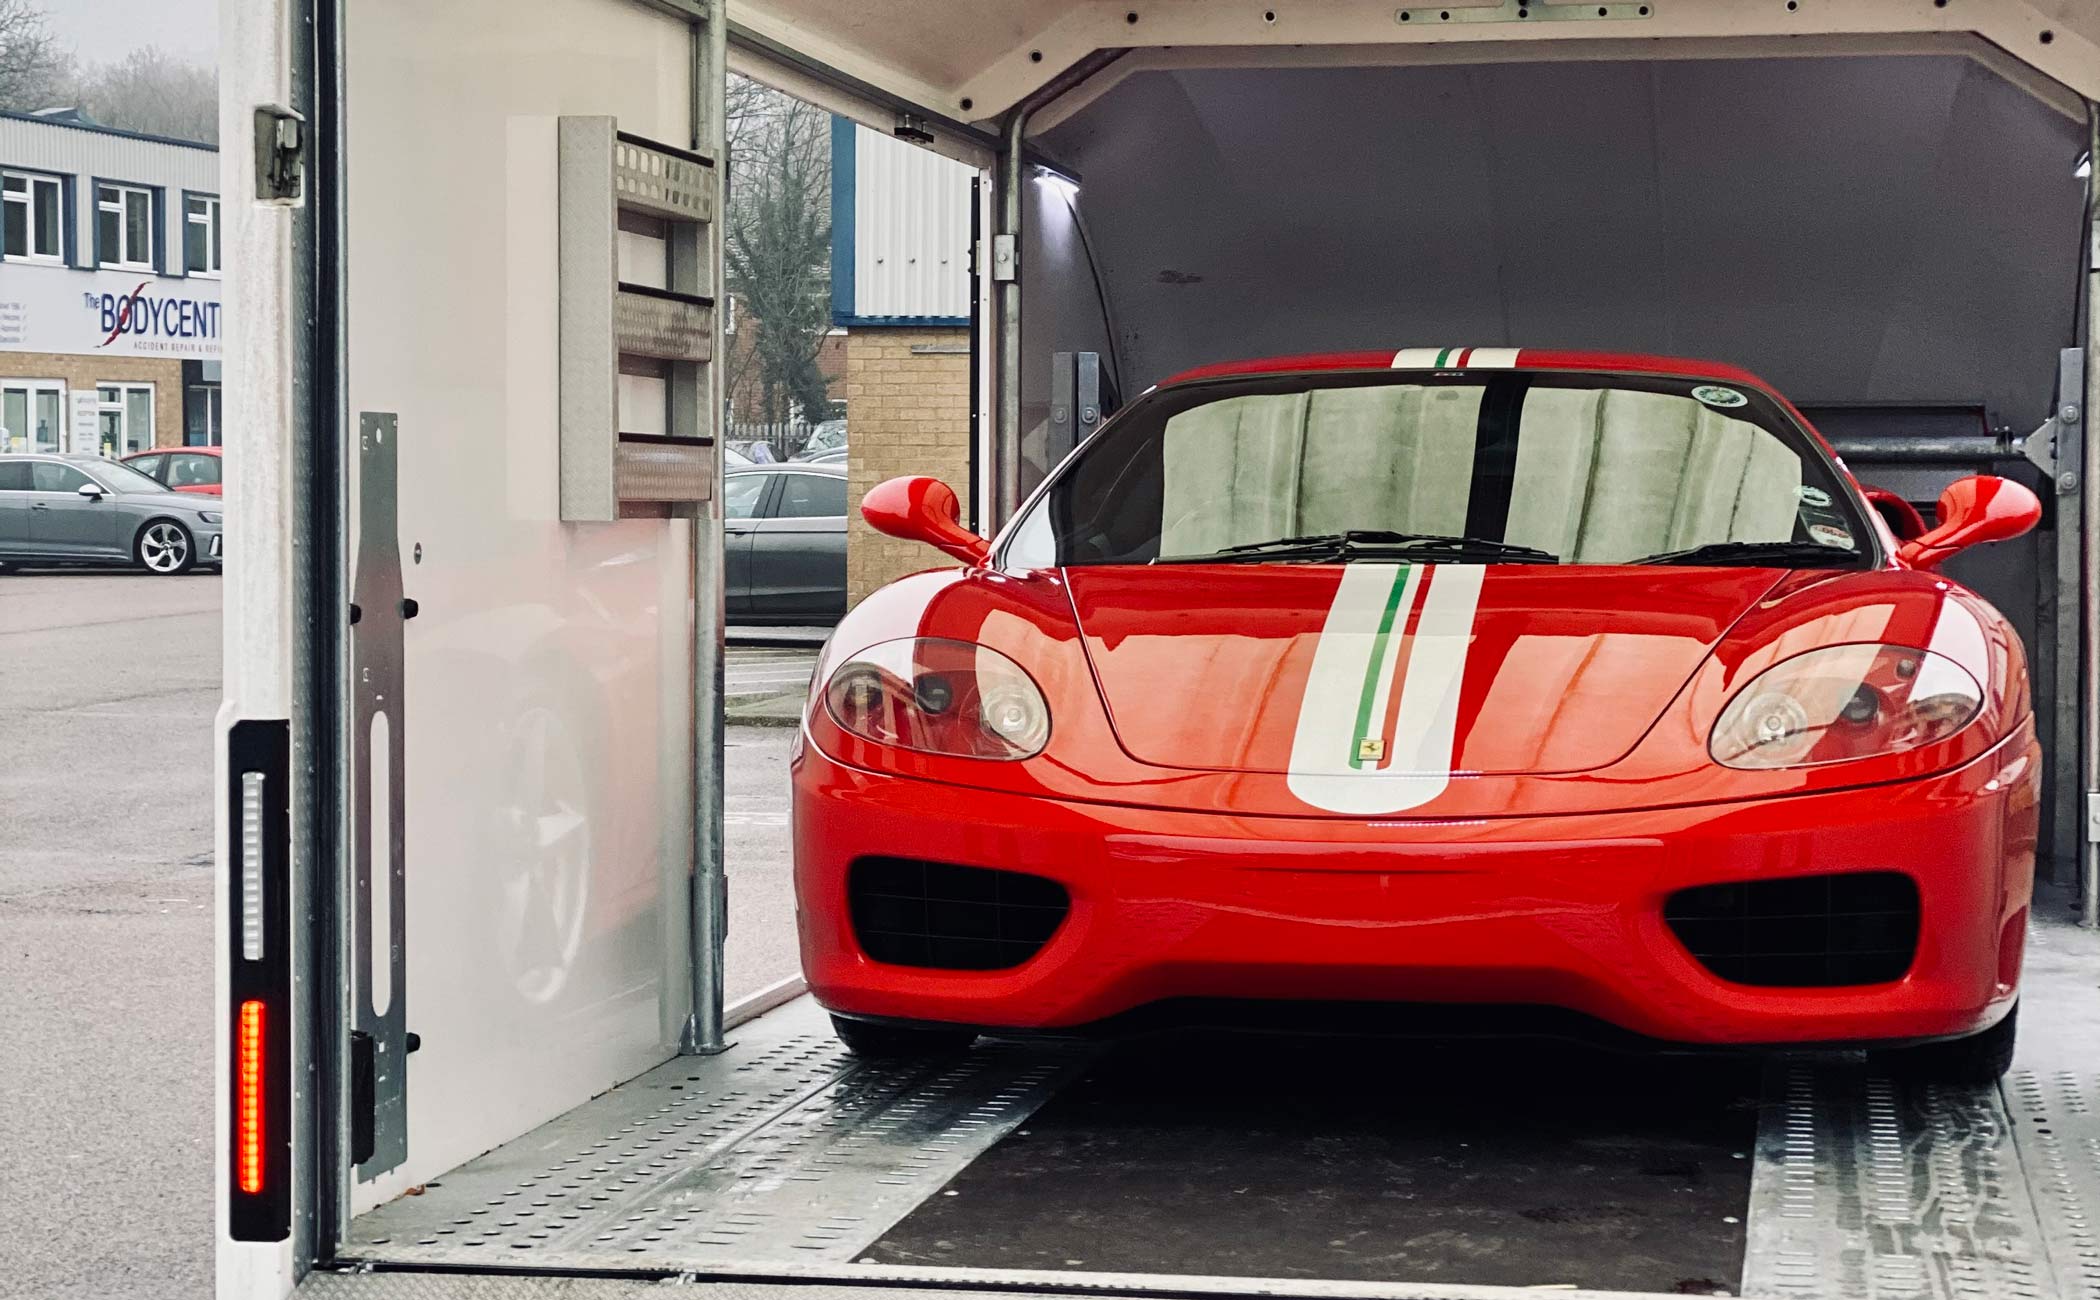 Ferrari in mobile valeting service